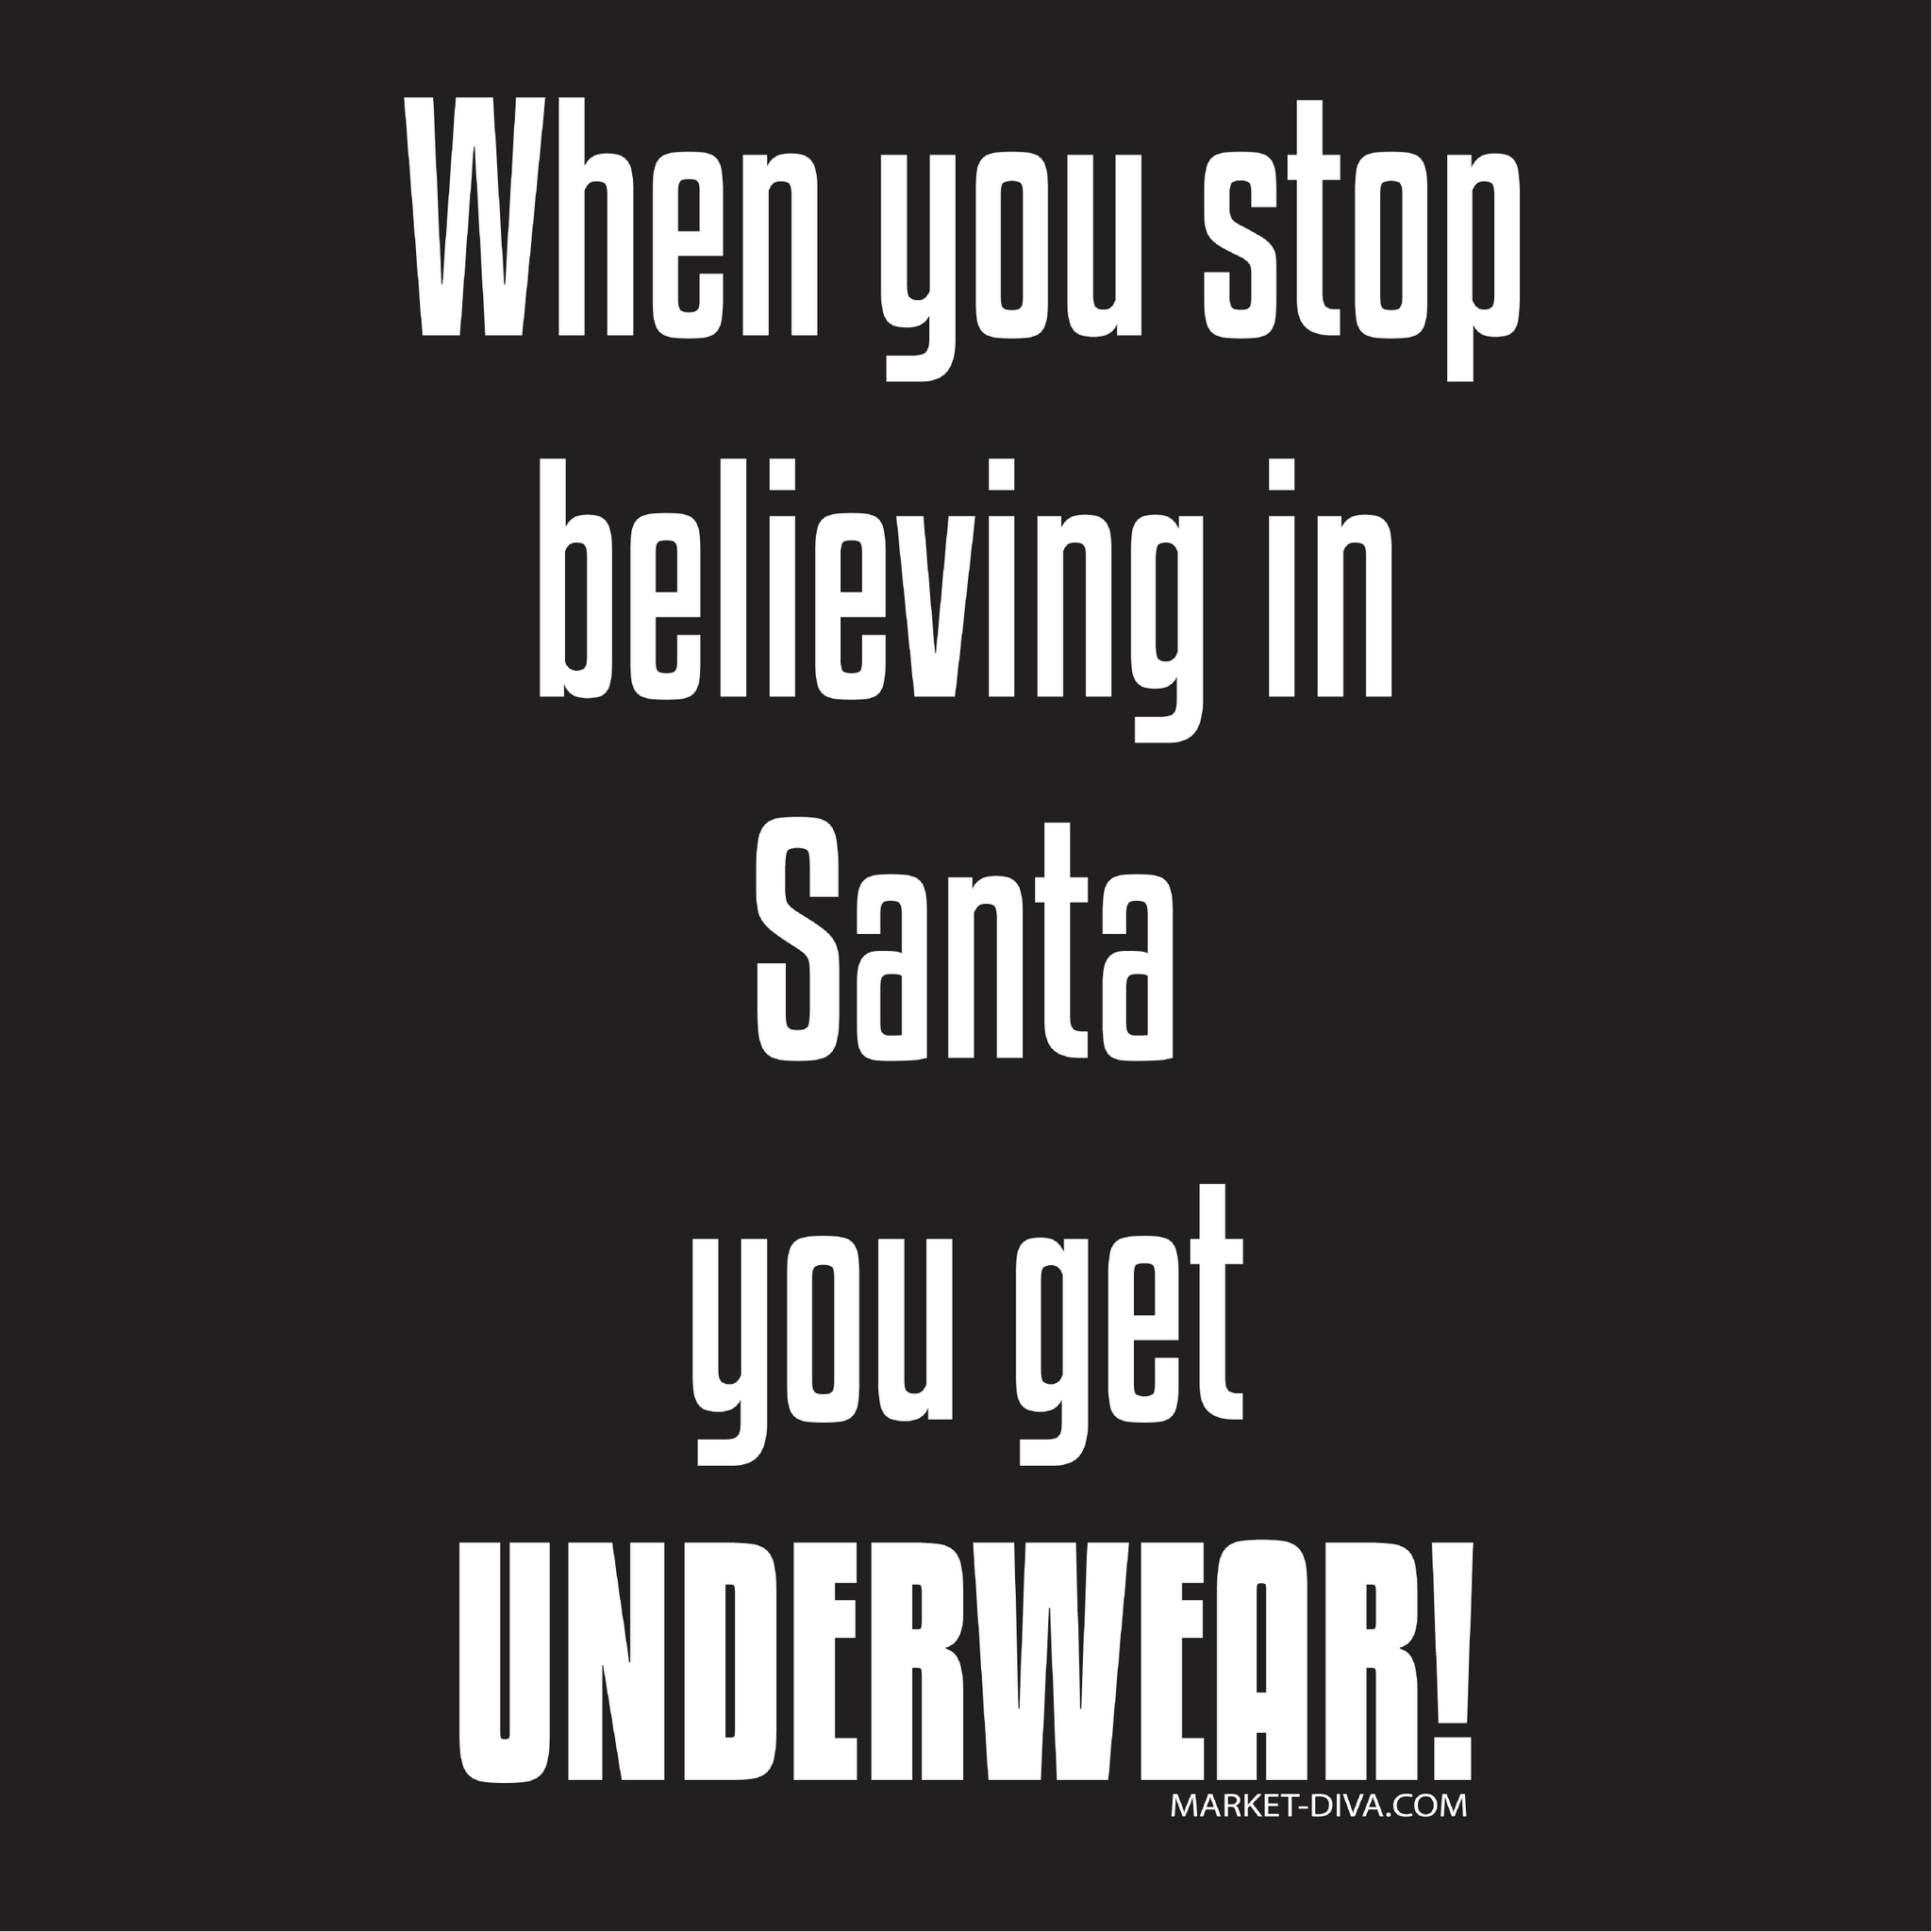 Christmas: Stop Believing in Santa you get Underwear